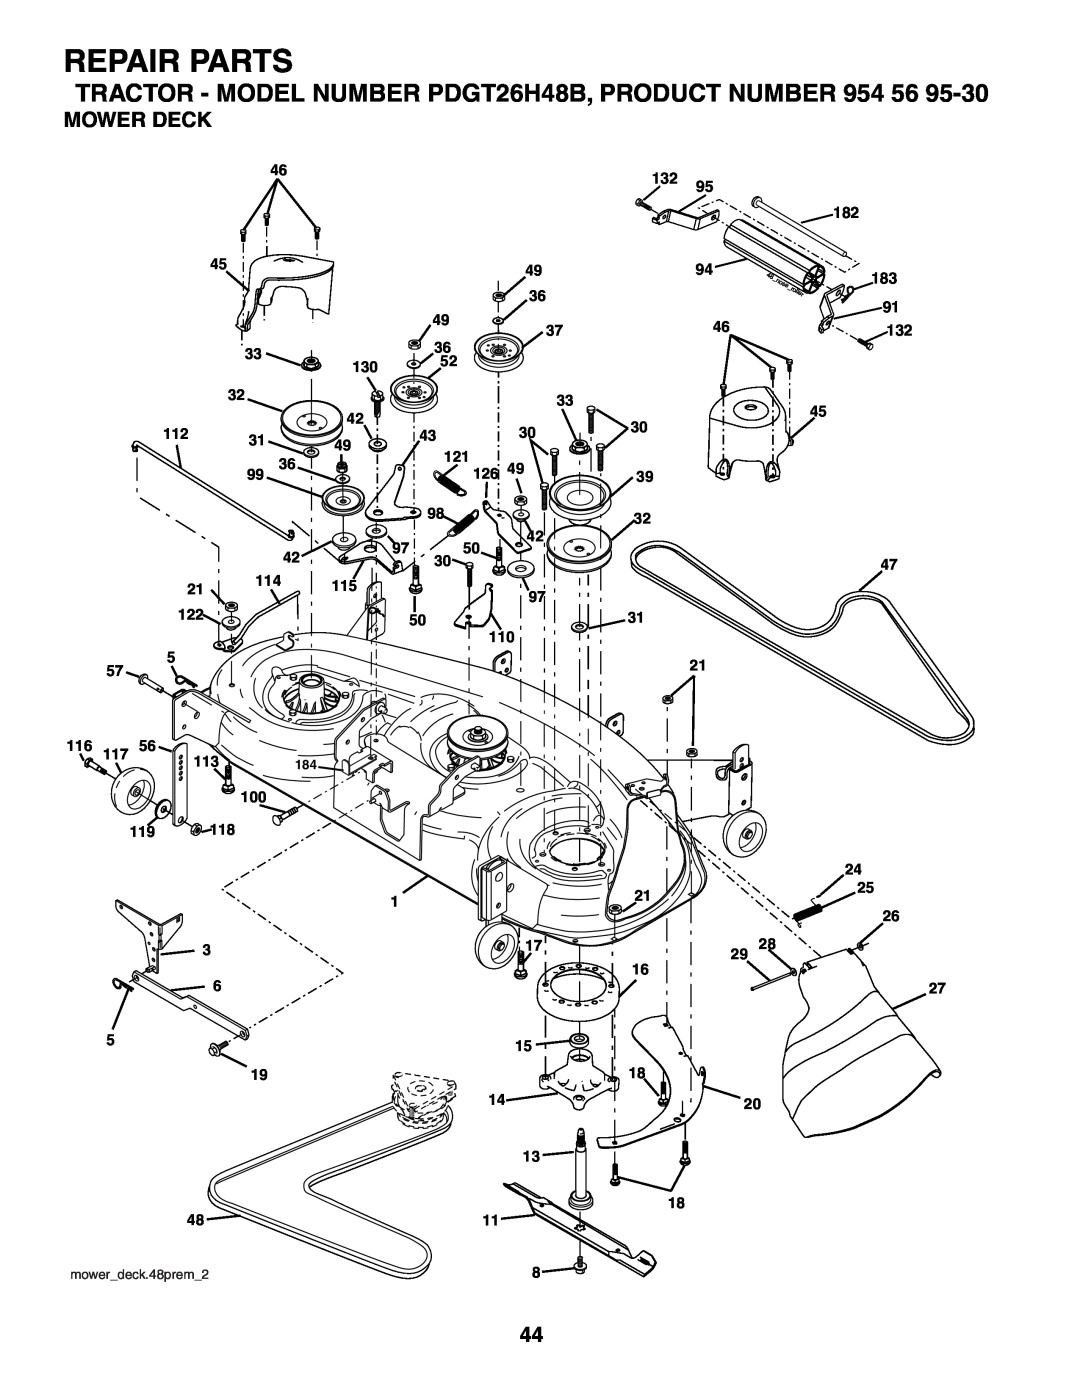 Poulan owner manual Mower Deck, Repair Parts, TRACTOR - MODEL NUMBER PDGT26H48B, PRODUCT NUMBER, mowerdeck.48prem2 